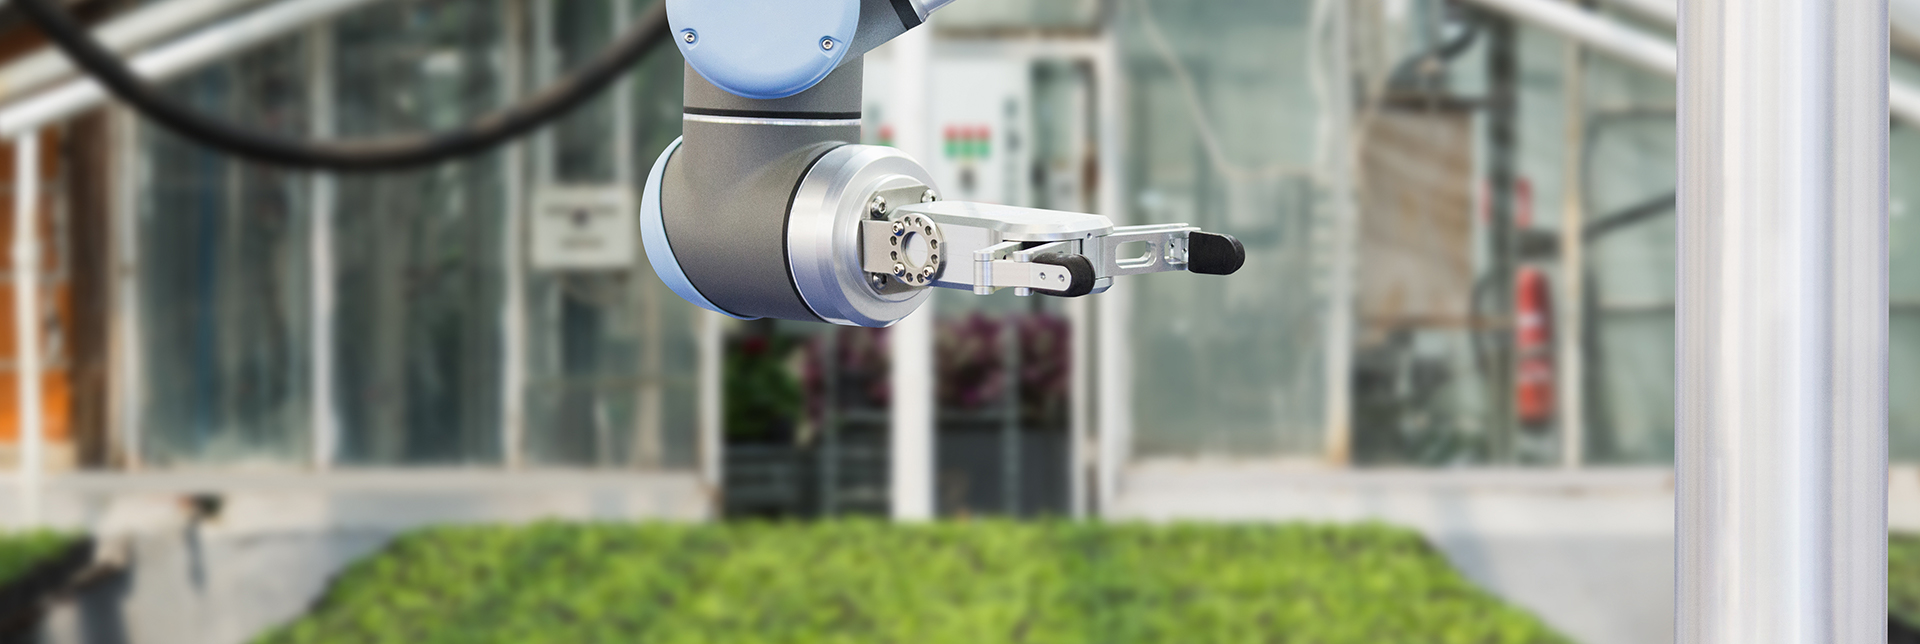 La robótica en la agricultura | ¿Qué robots trabajan realmente en las tareas agrícolas?